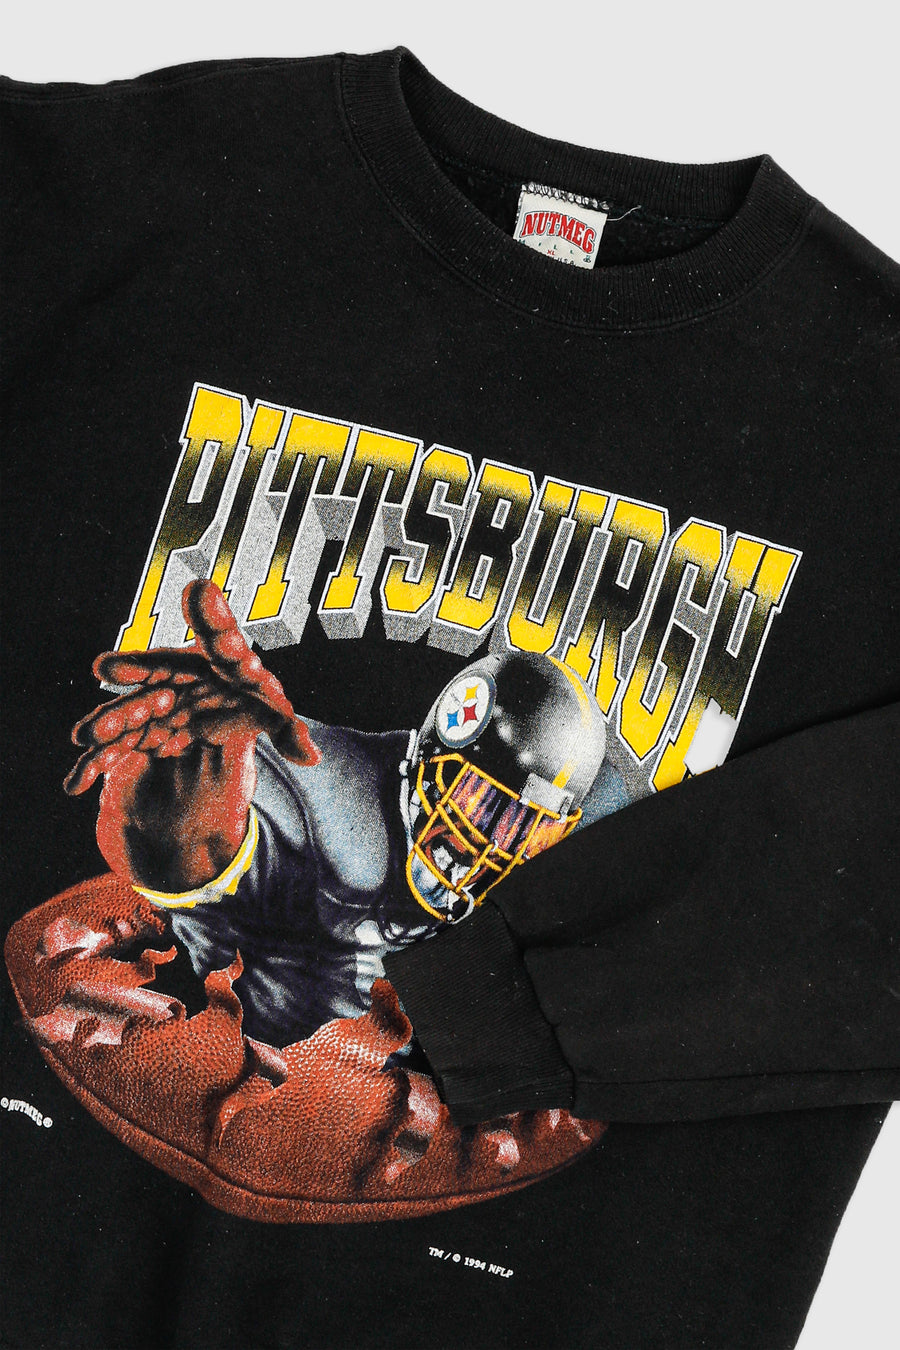 Vintage Pittsburgh Steelers NFL Sweatshirt - XL